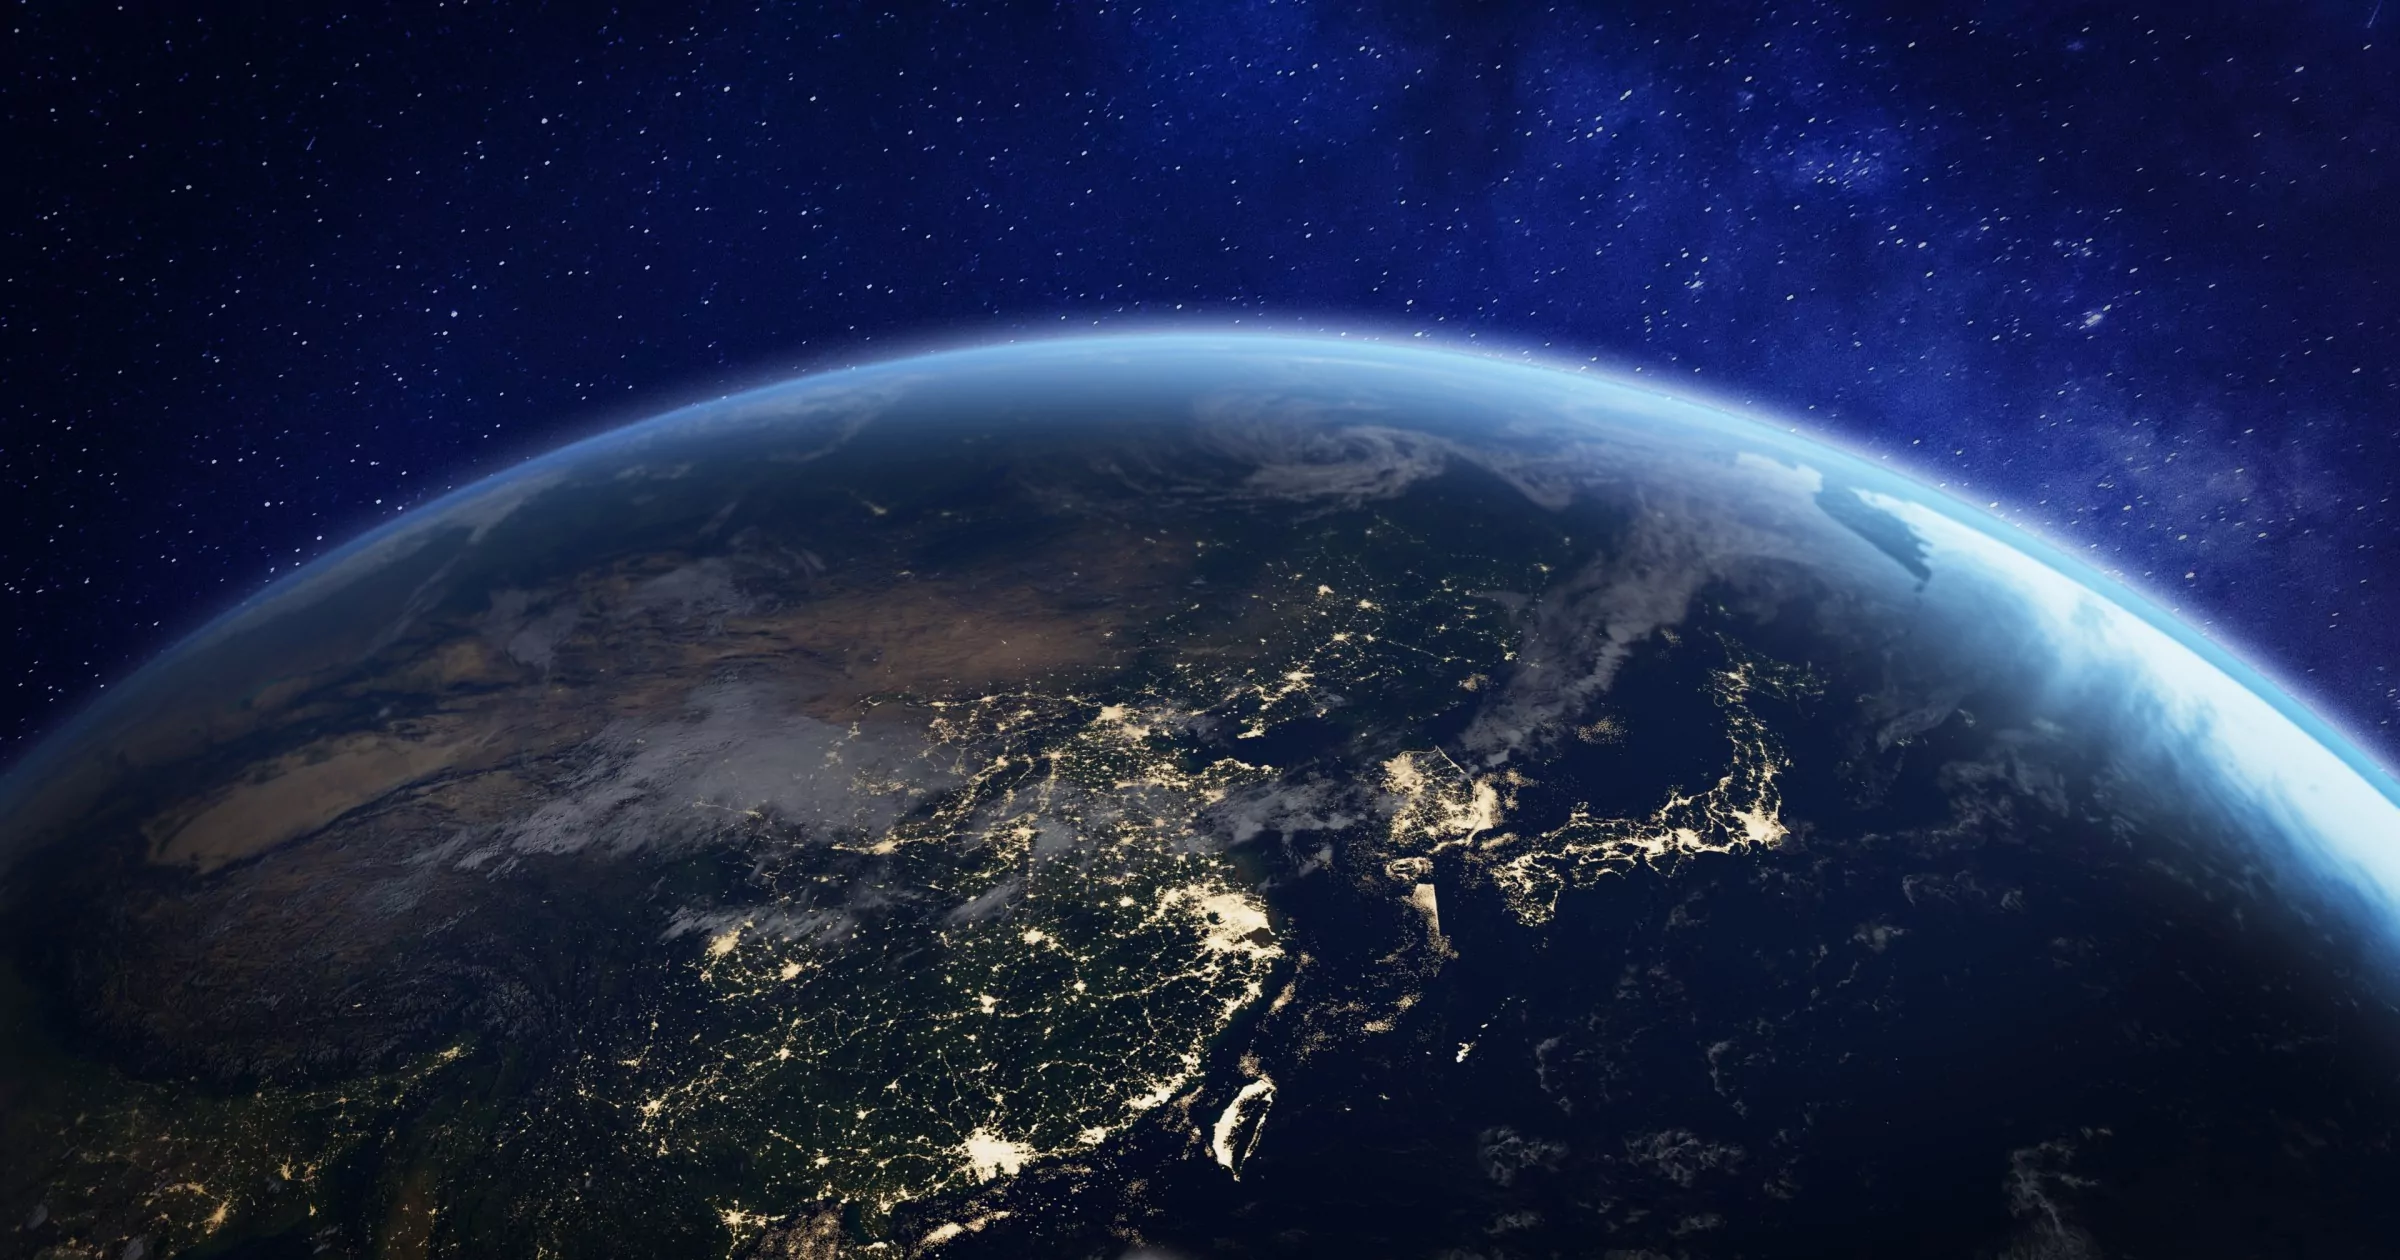 kuzey yarımküreyi ve bir ülkenin ışıklarını gösteren uzaydan çekilmiş dünya resmi